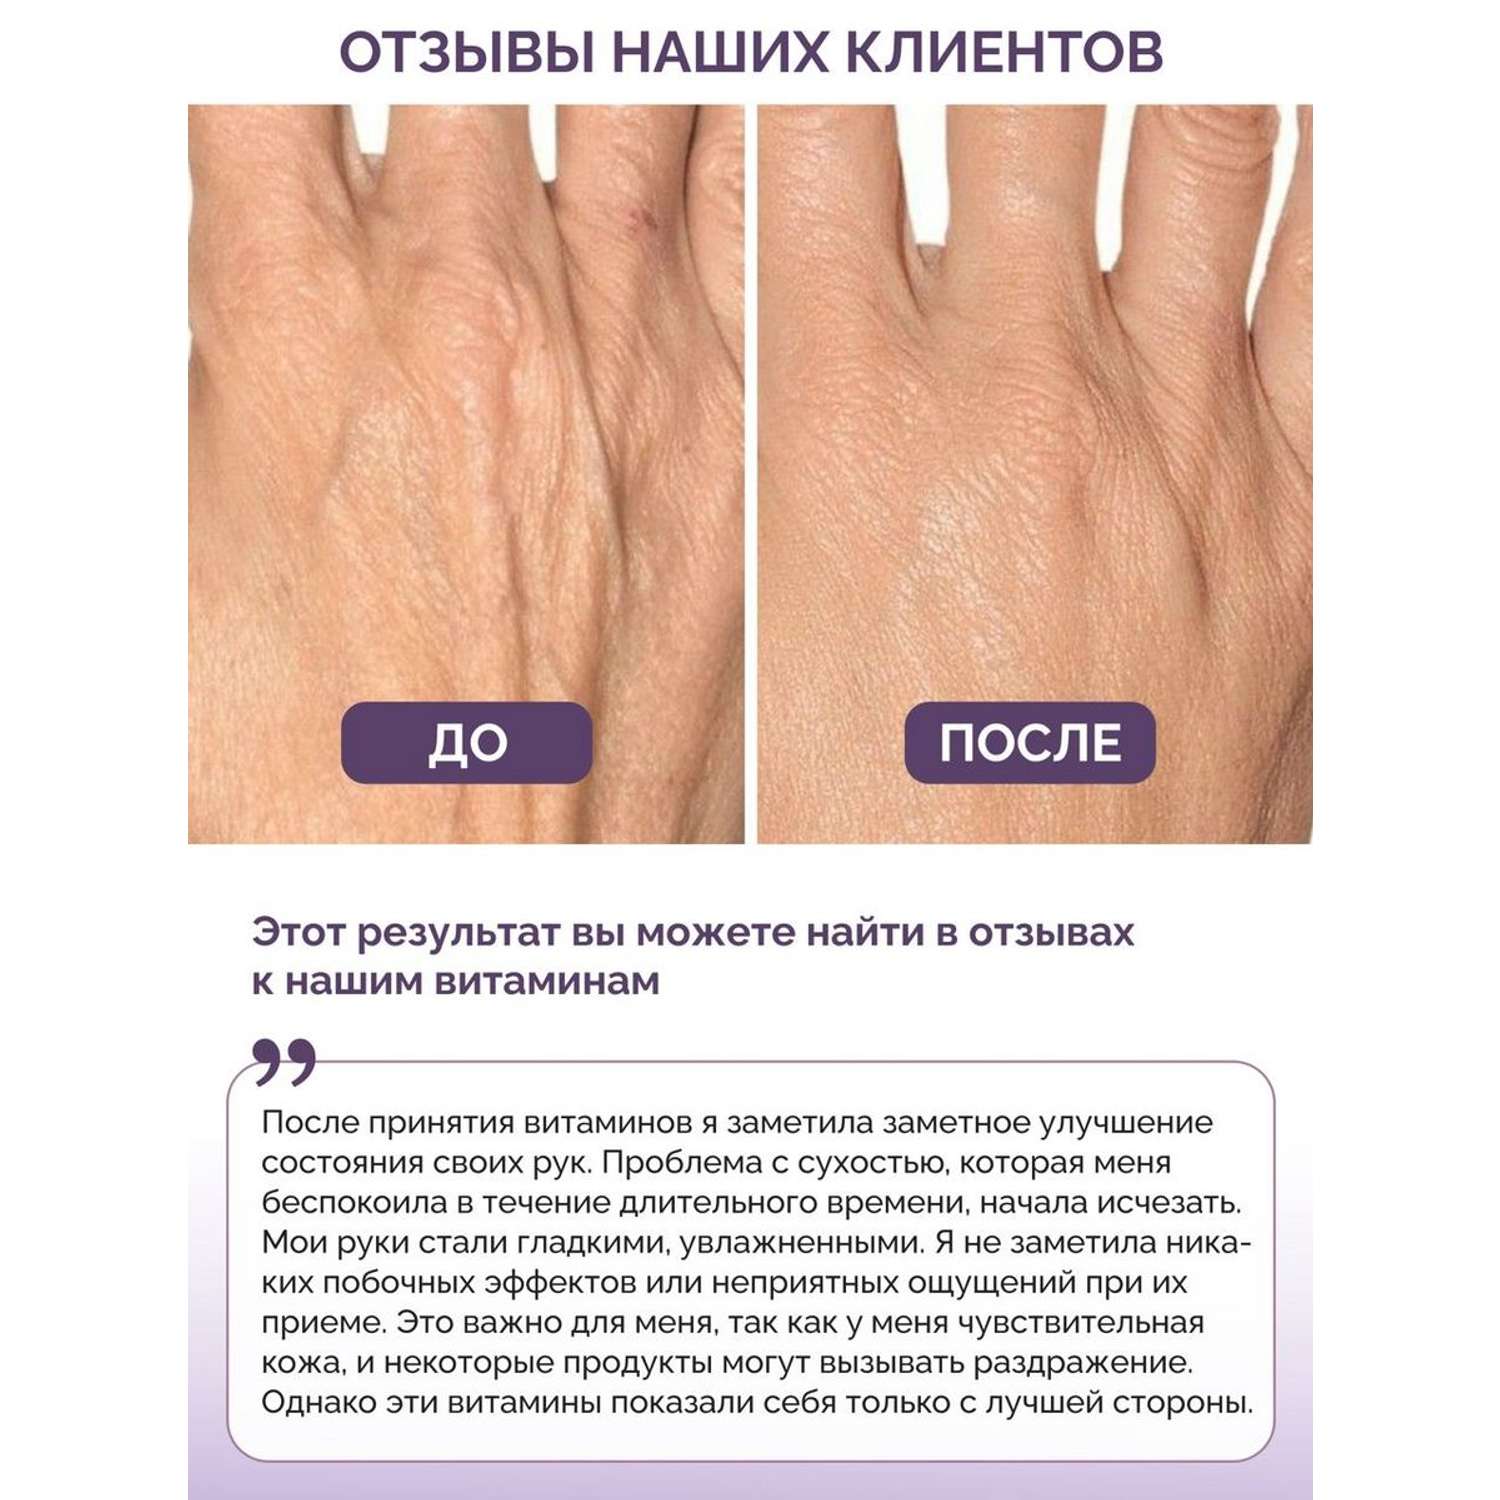 Витамины для волос кожи ногтей BIOTTE hair nails skin витаминно-минеральный комплекс БАД 60 капсул - фото 5